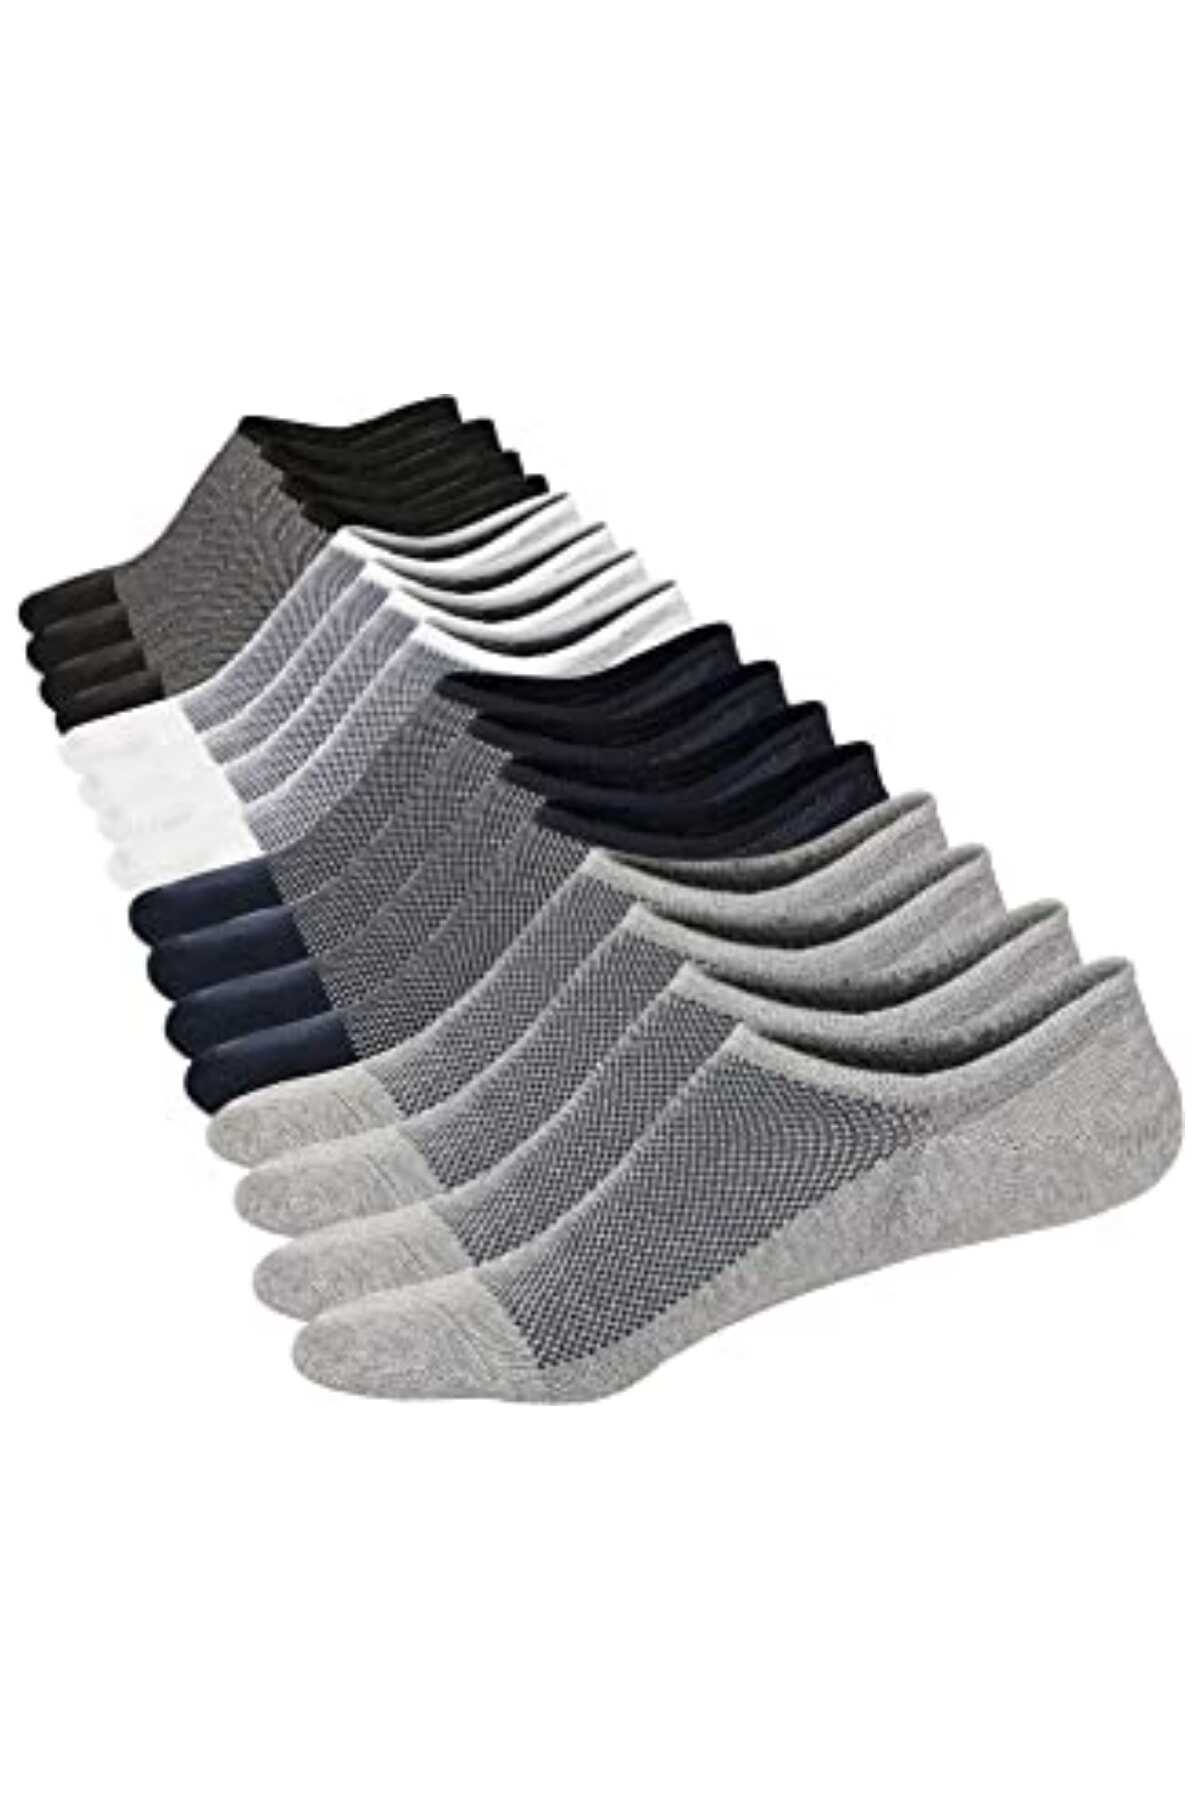 جوراب مردانه کالج طرح دار چند رنگ برند socksbox